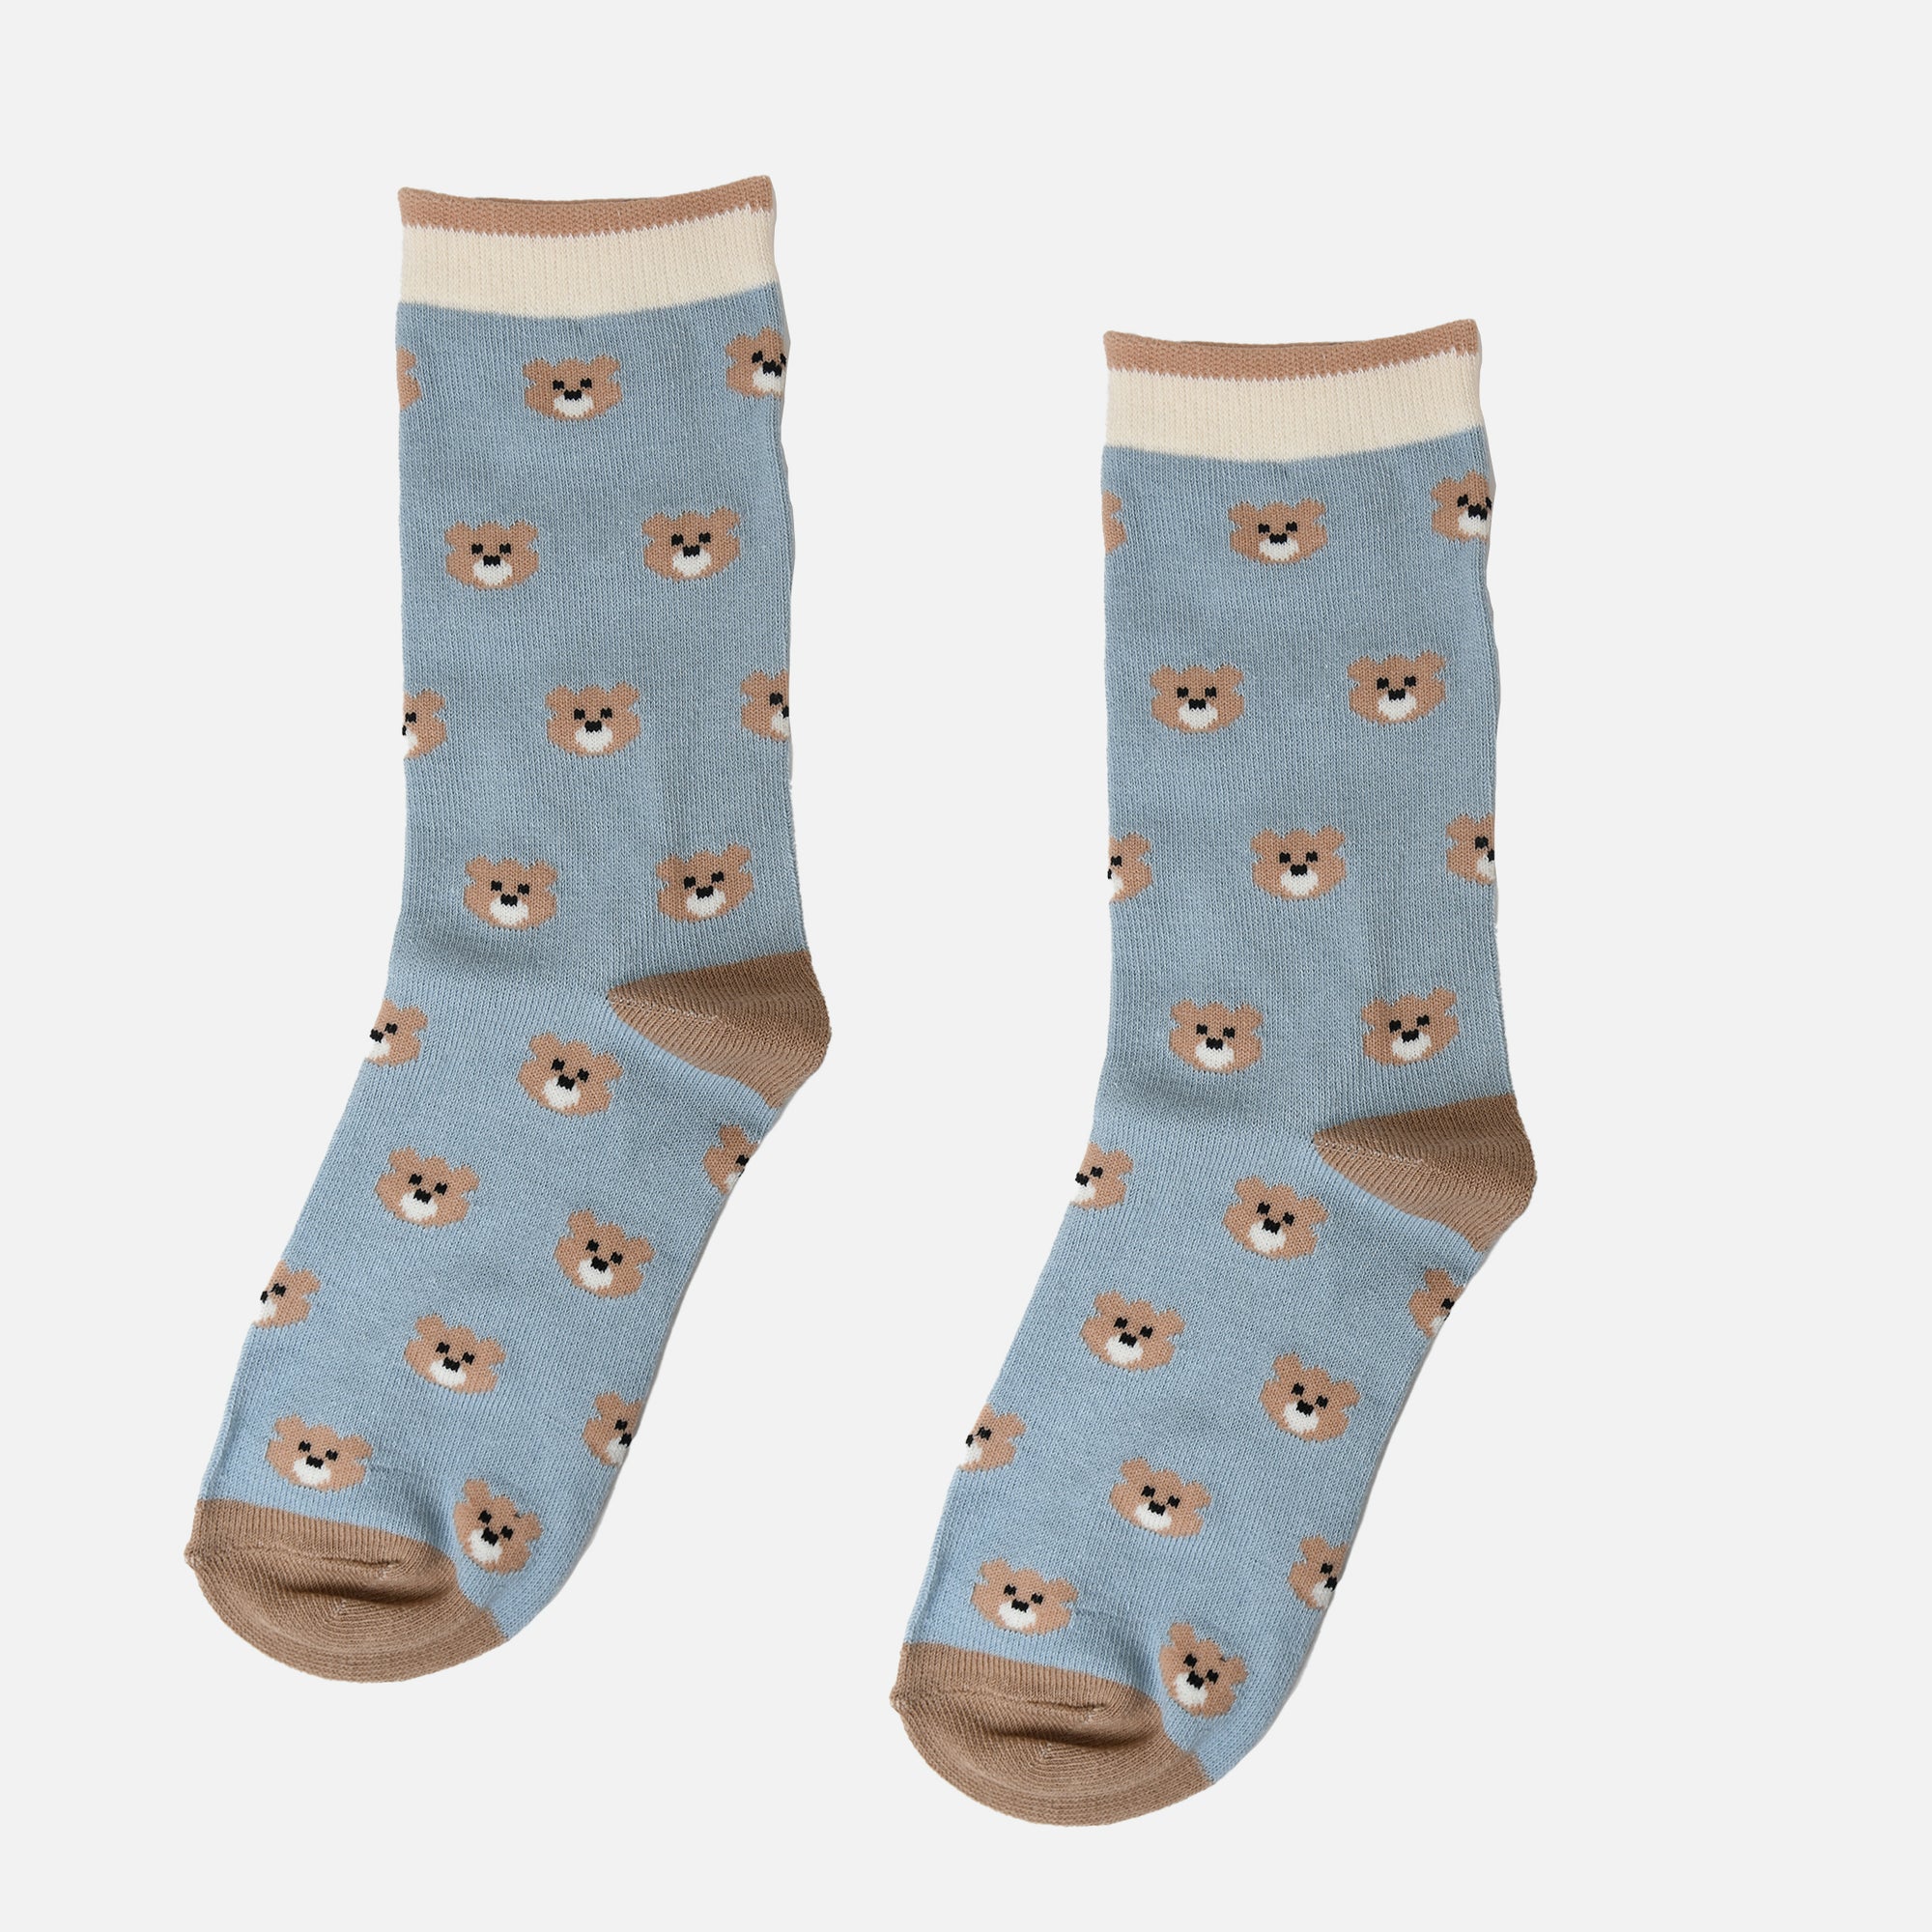 Blue teddy faces socks